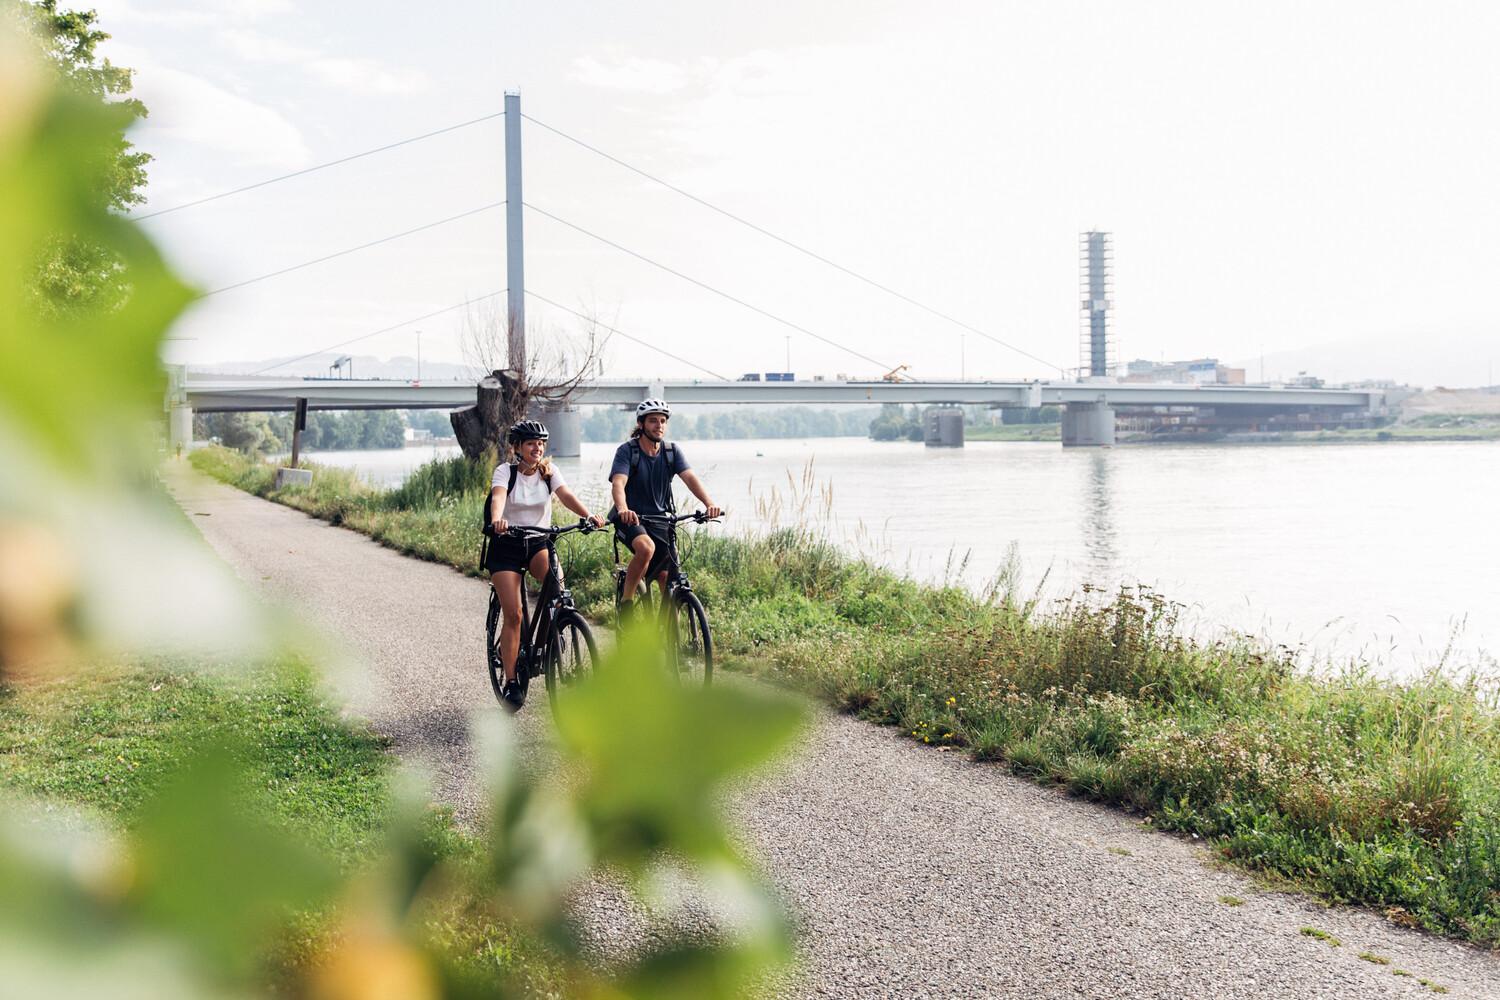 Zwei junge Menschen fahren nebeneinander auf Fahrrädern an einem Fluss entlang